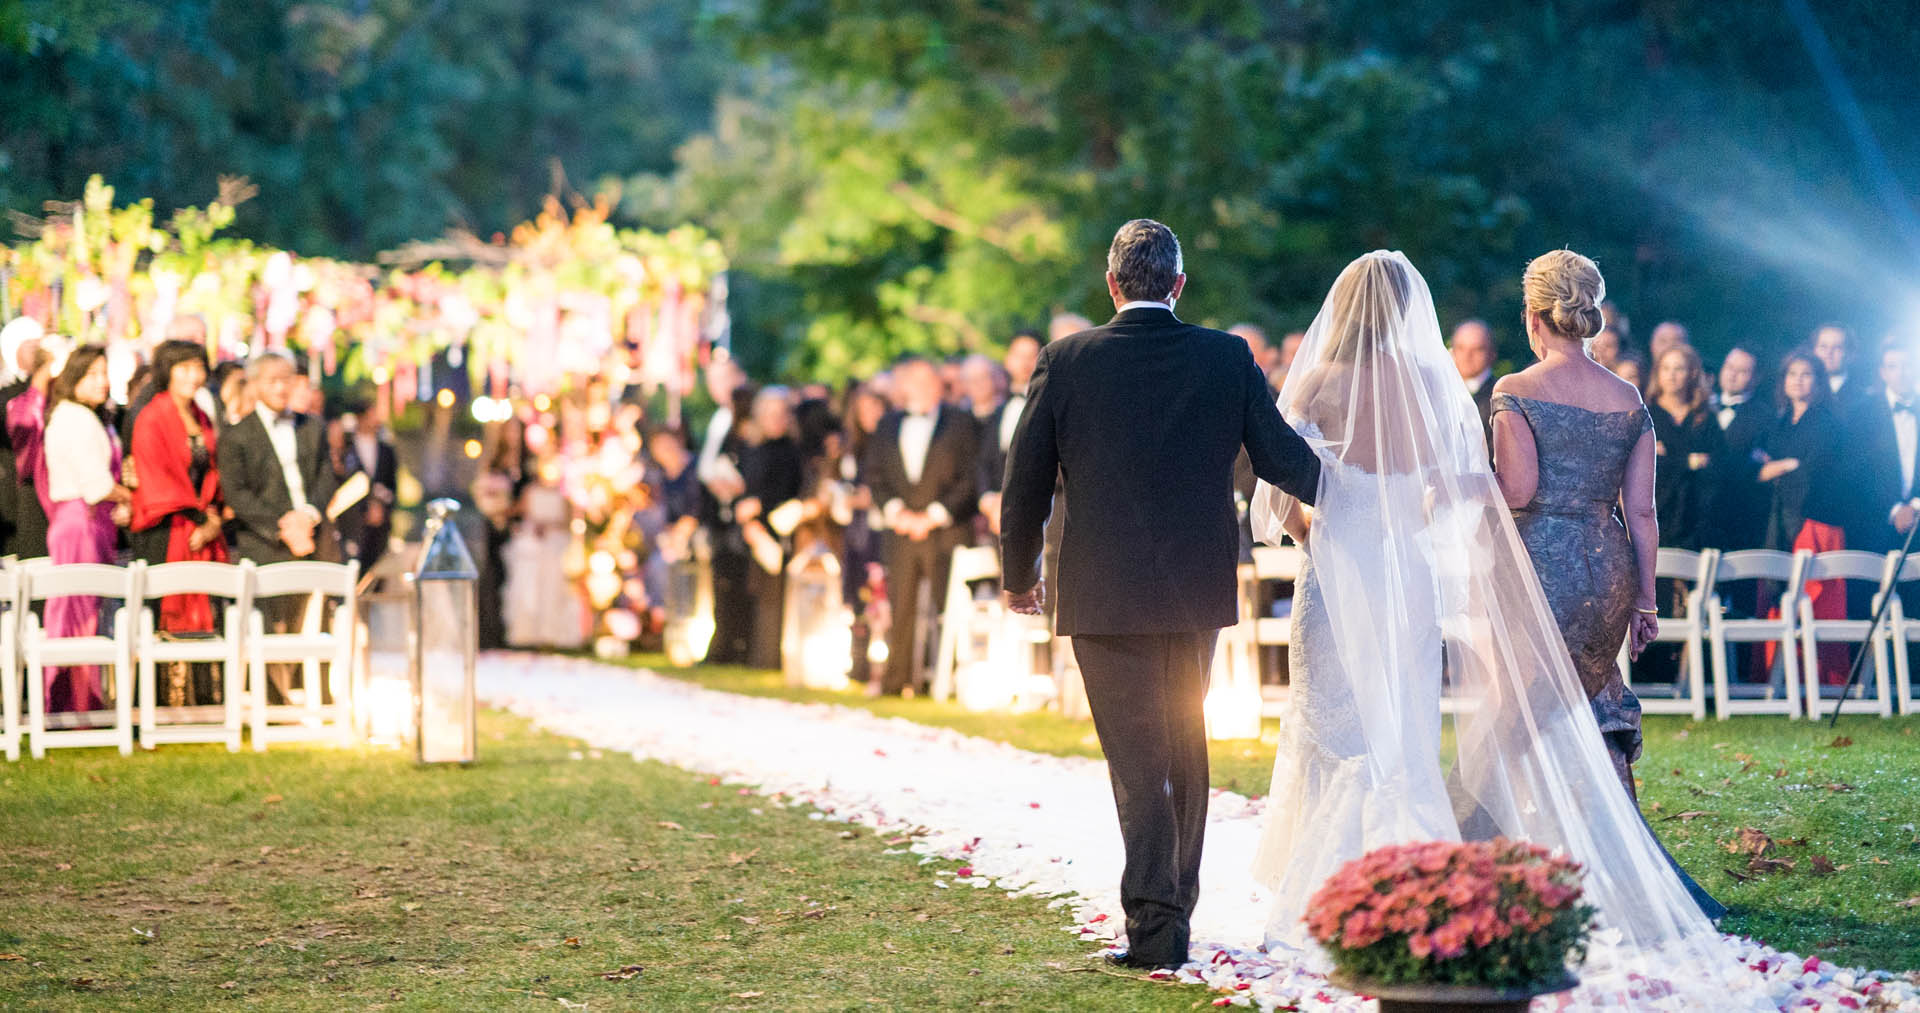 Des rituels qu’on peut intégrer dans la cérémonie du mariage – Le blog ...